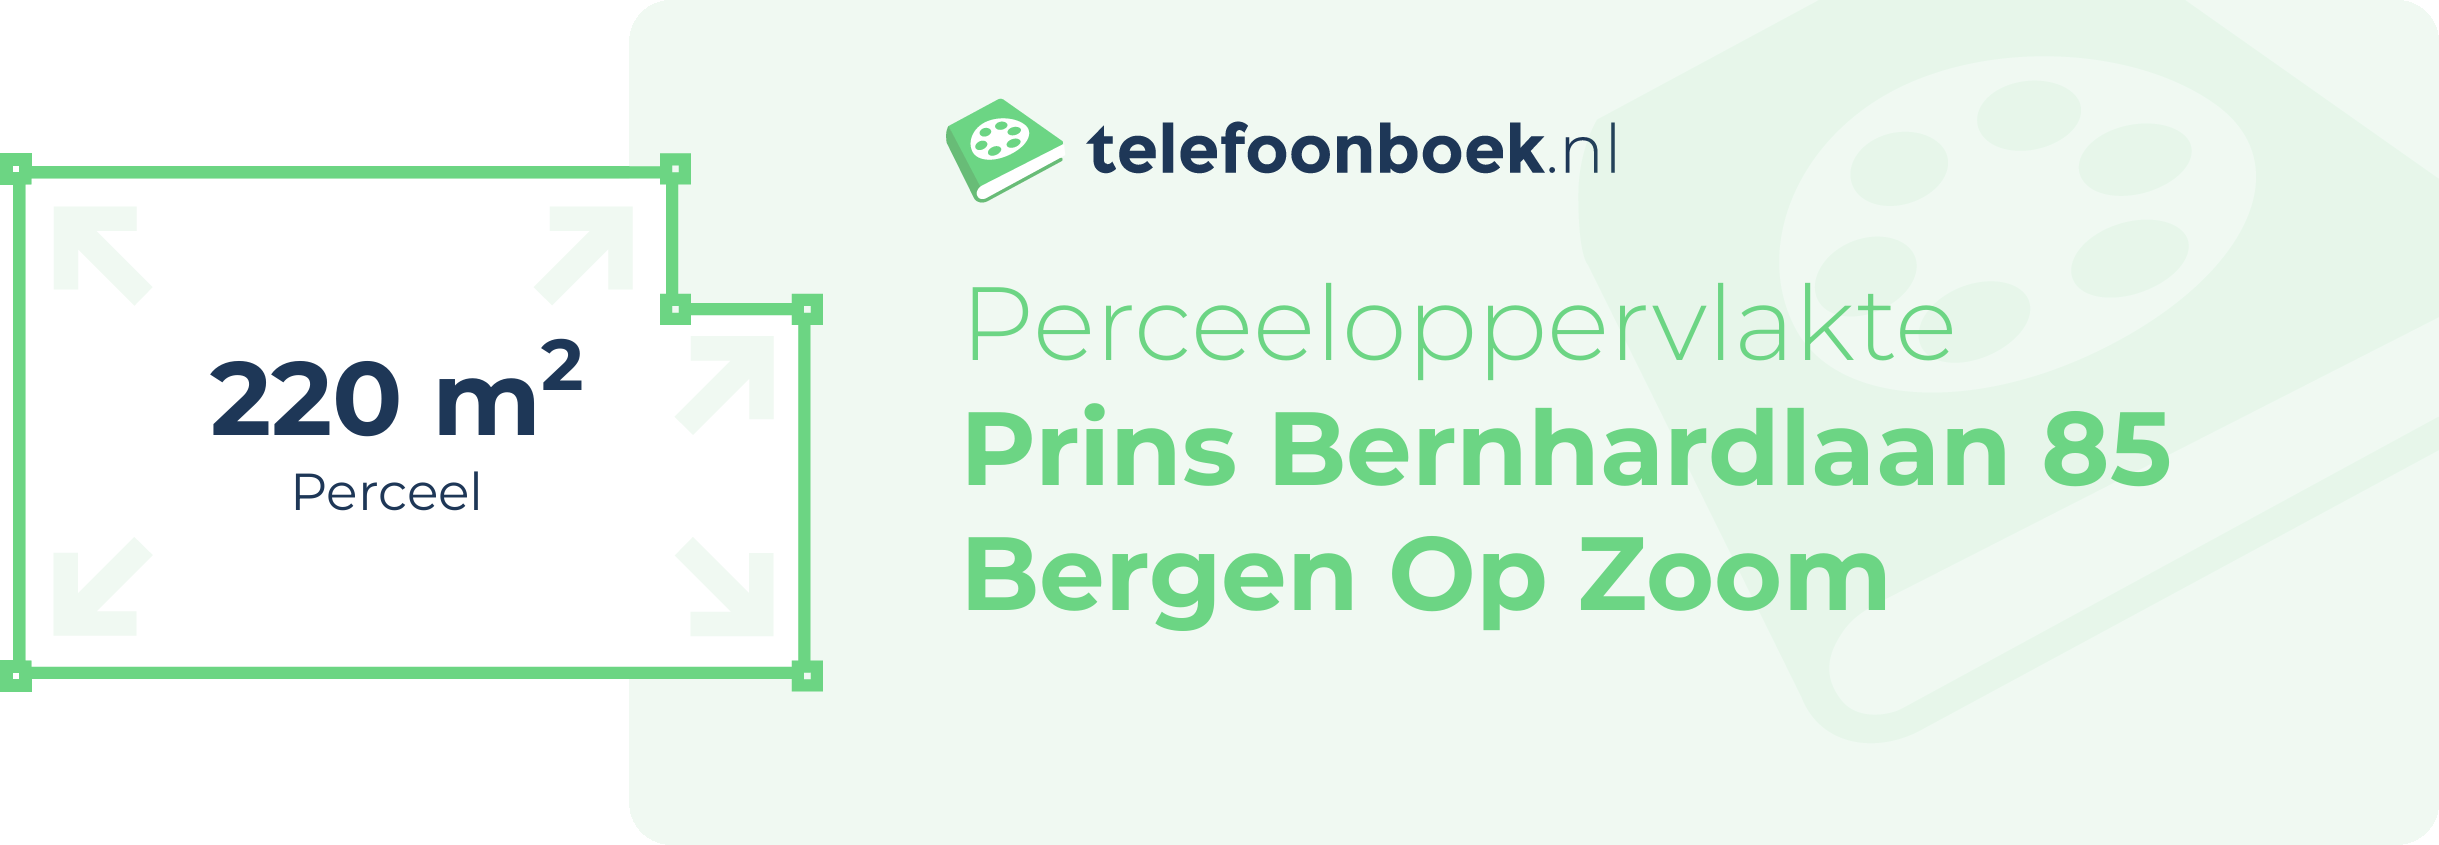 Perceeloppervlakte Prins Bernhardlaan 85 Bergen Op Zoom